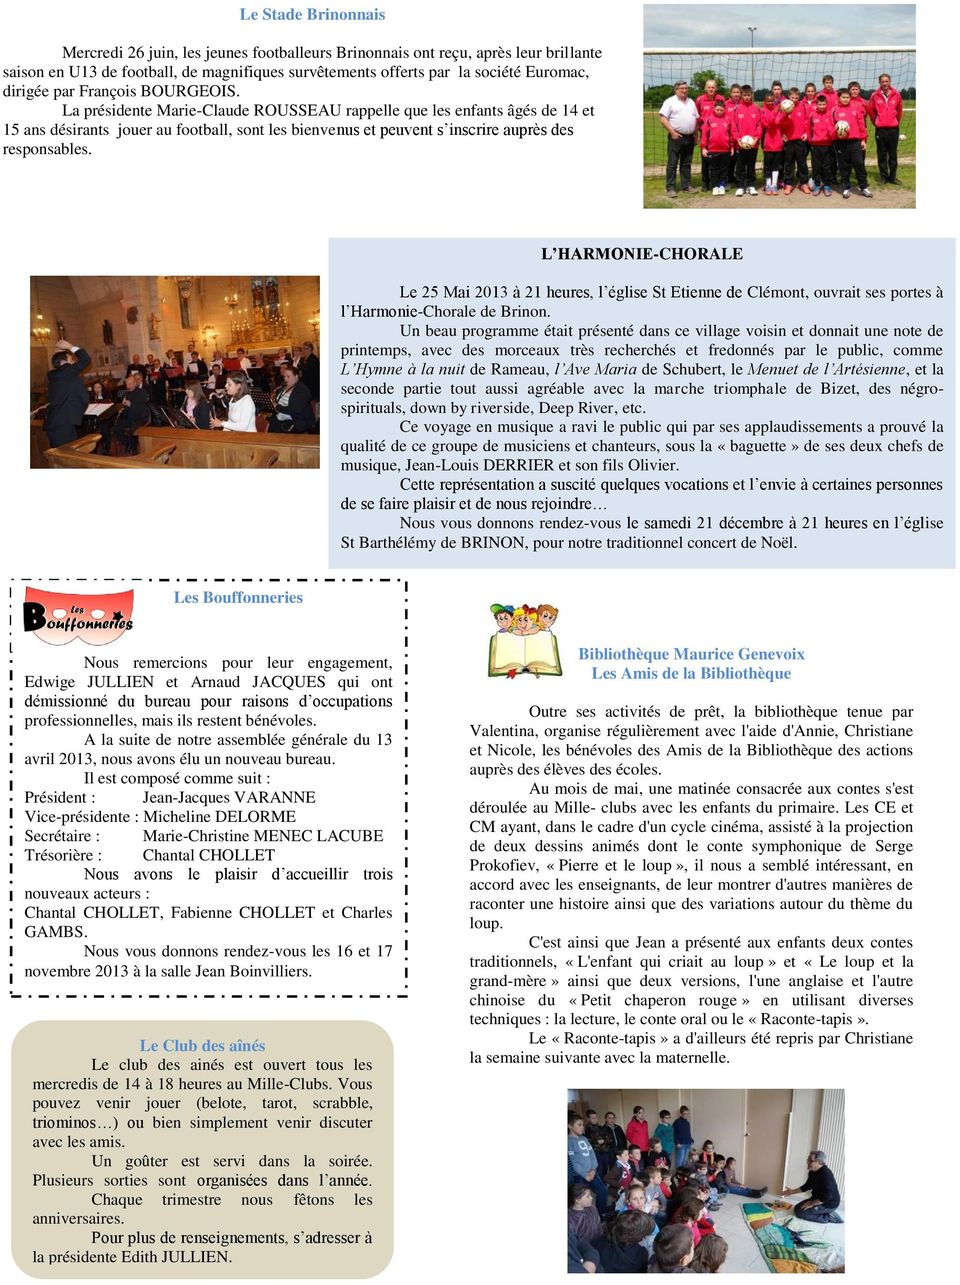 L HARMONIE-CHORALE Le 25 Mai 2013 à 21 heures, l église St Etienne de Clémont, ouvrait ses portes à l Harmonie-Chorale de Brinon.